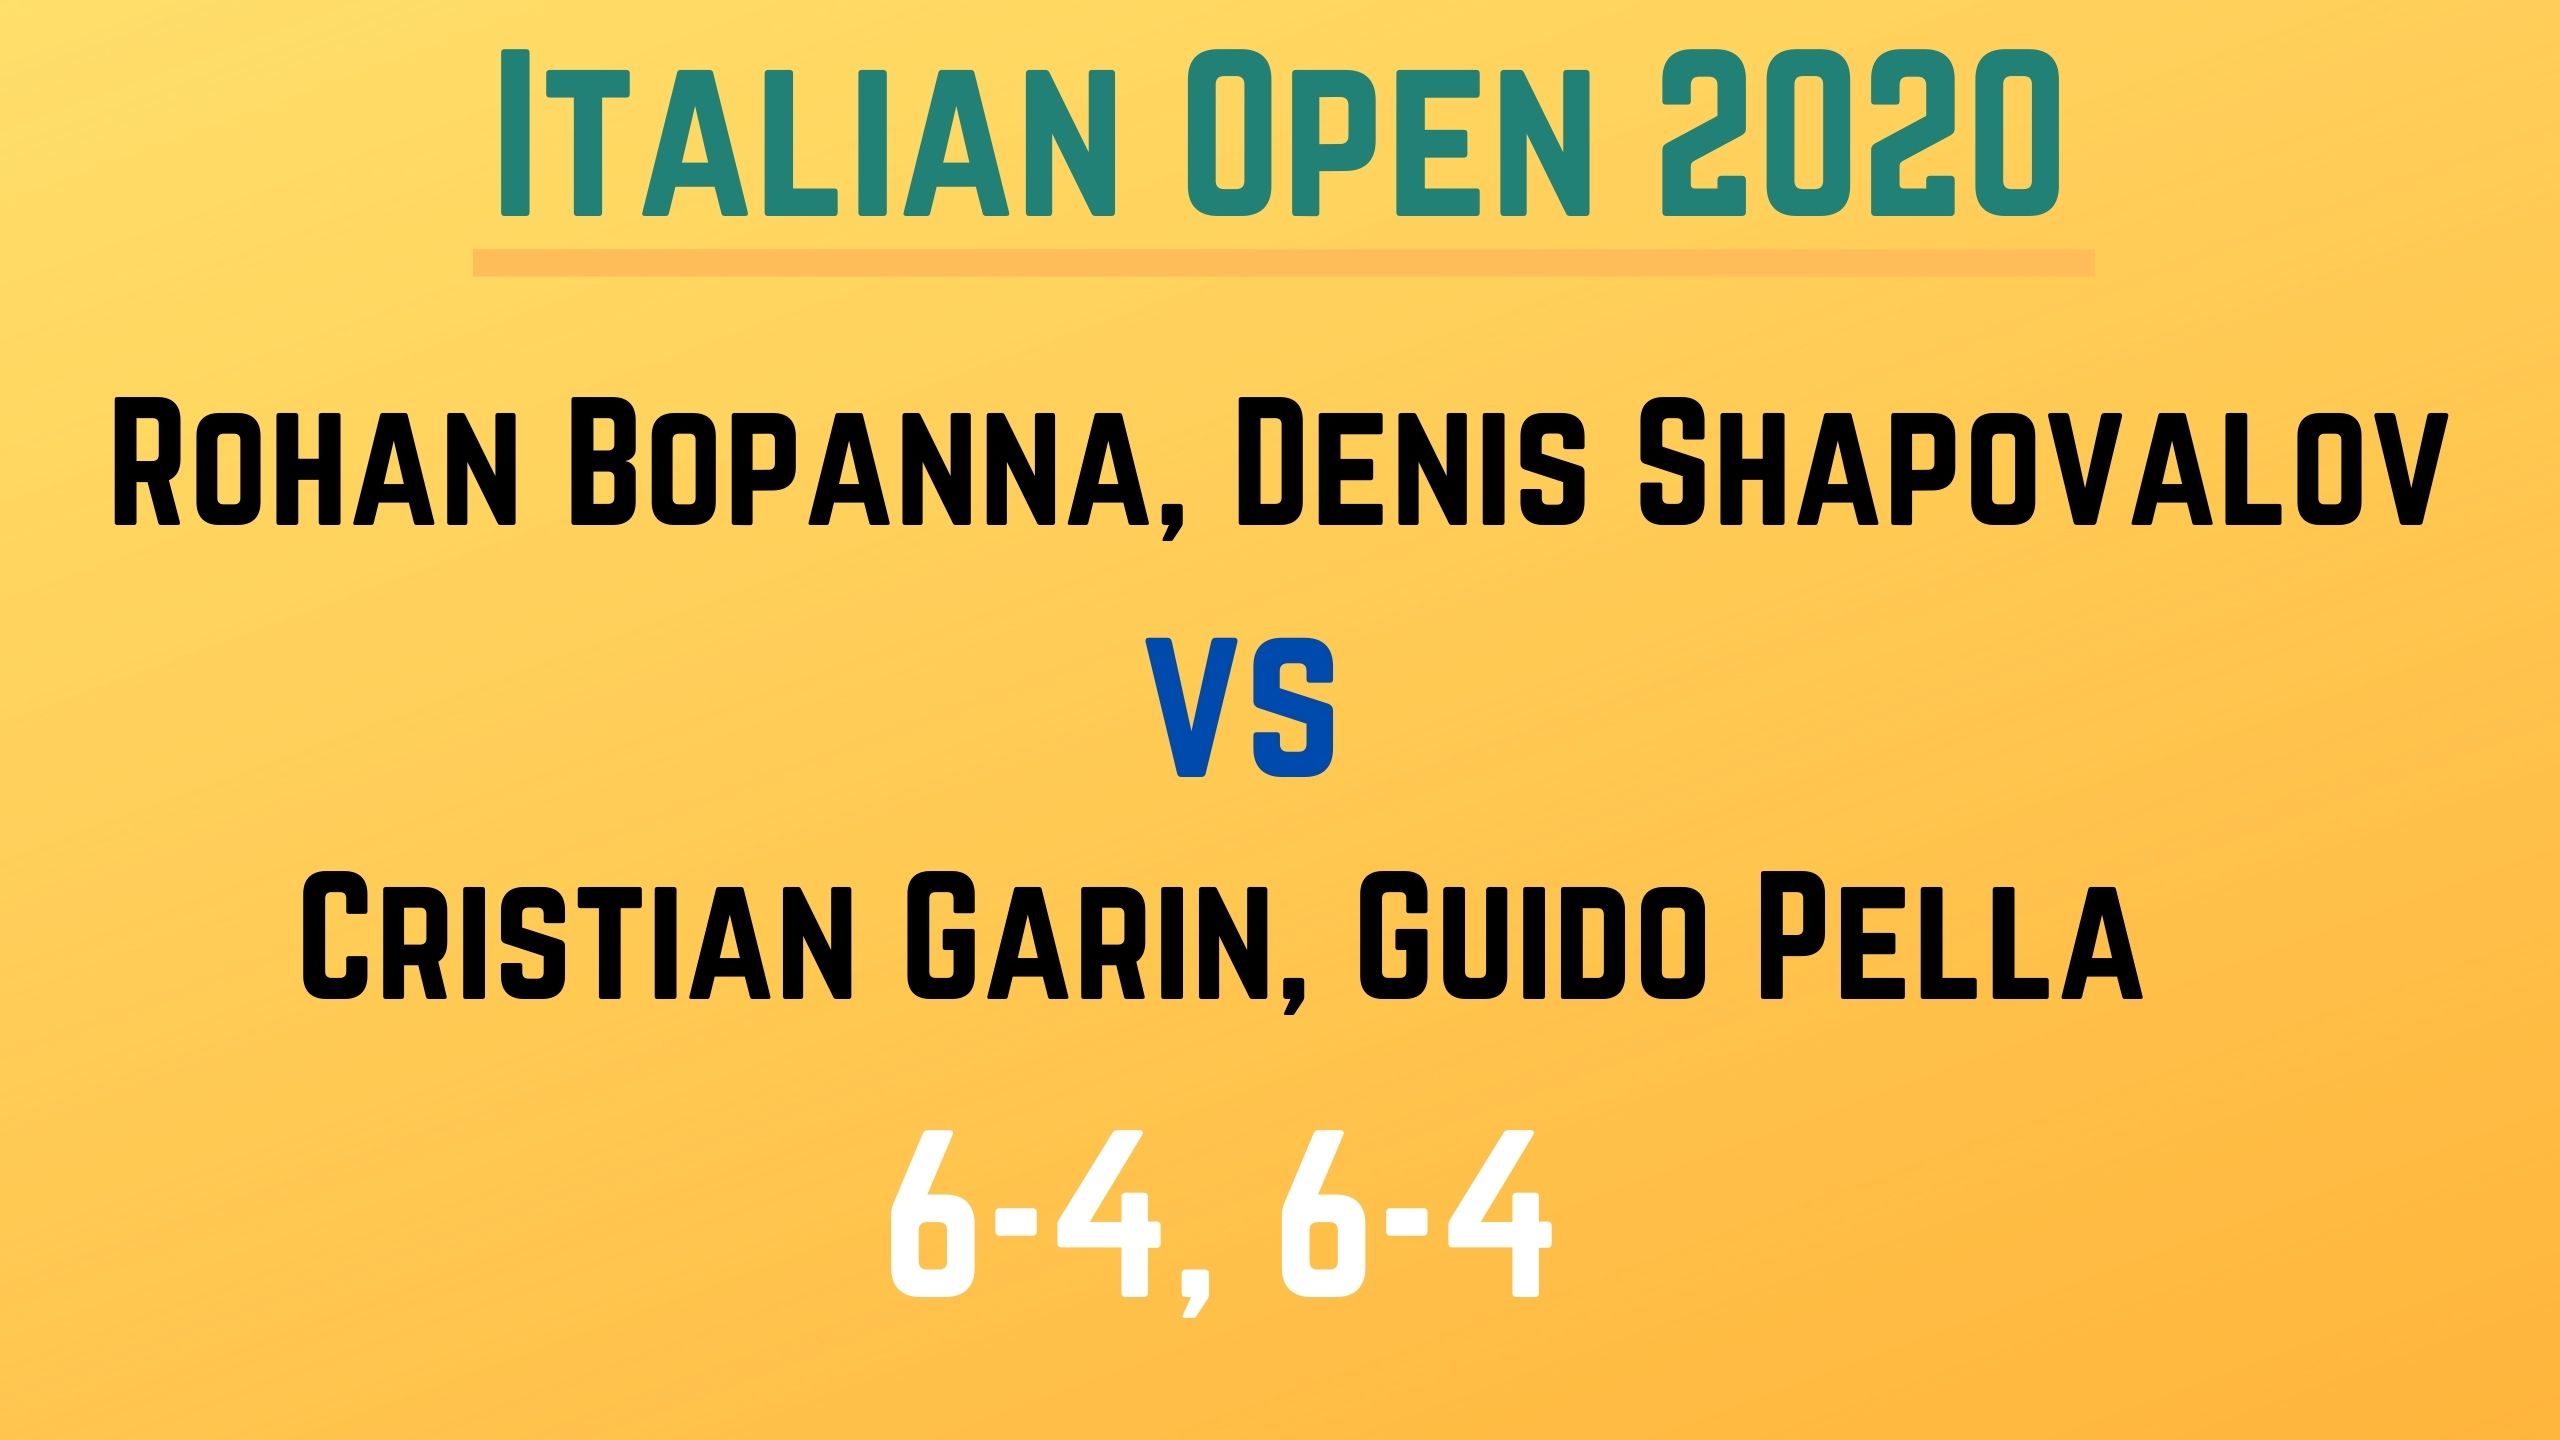 Italian Open, Rohan Bopanna, Denis Shapovalov